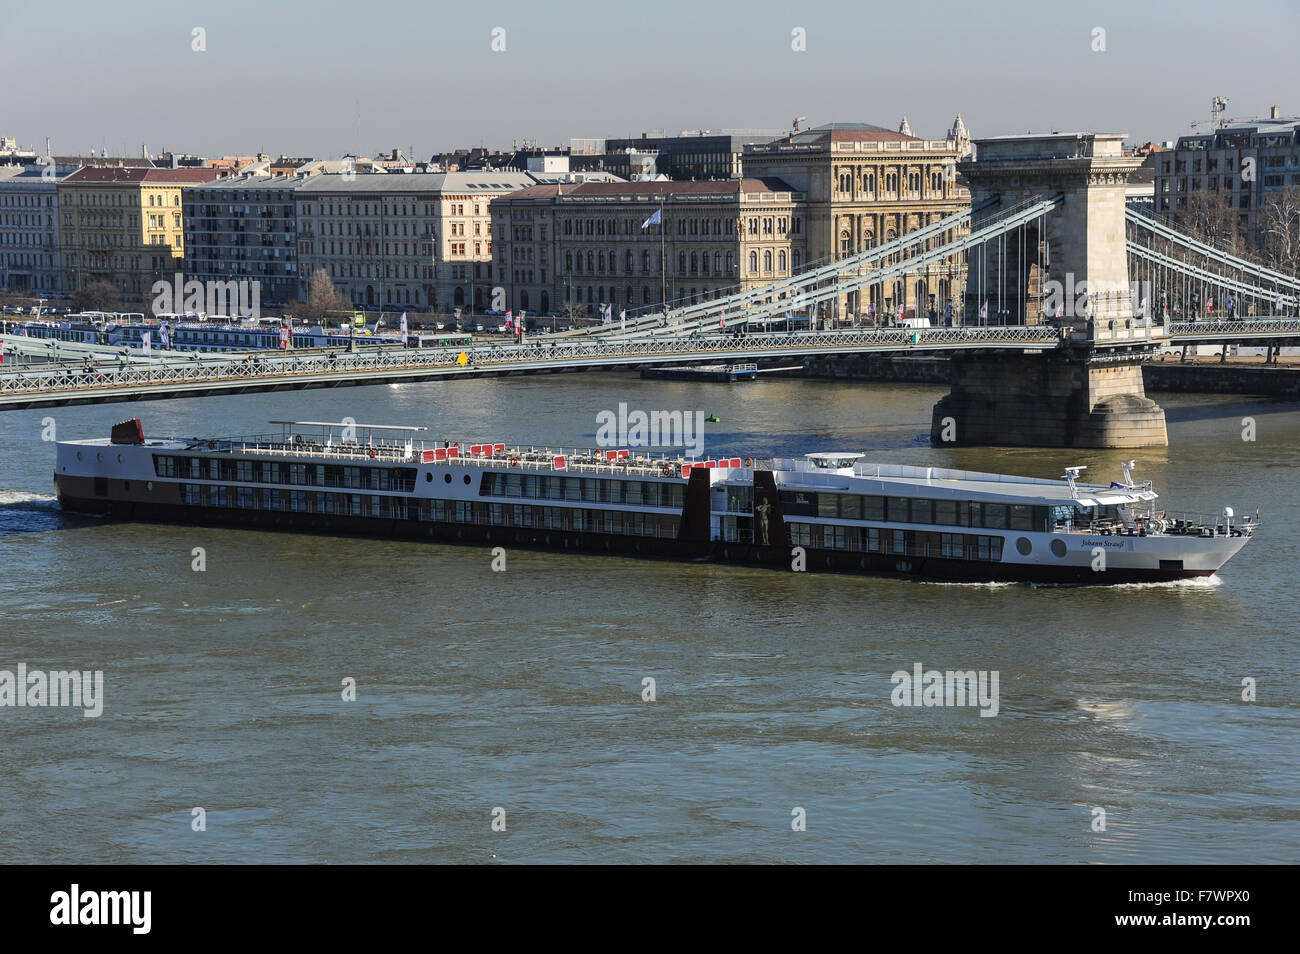 Blick auf die Stadt von Budapest, Ungarn Stockfoto